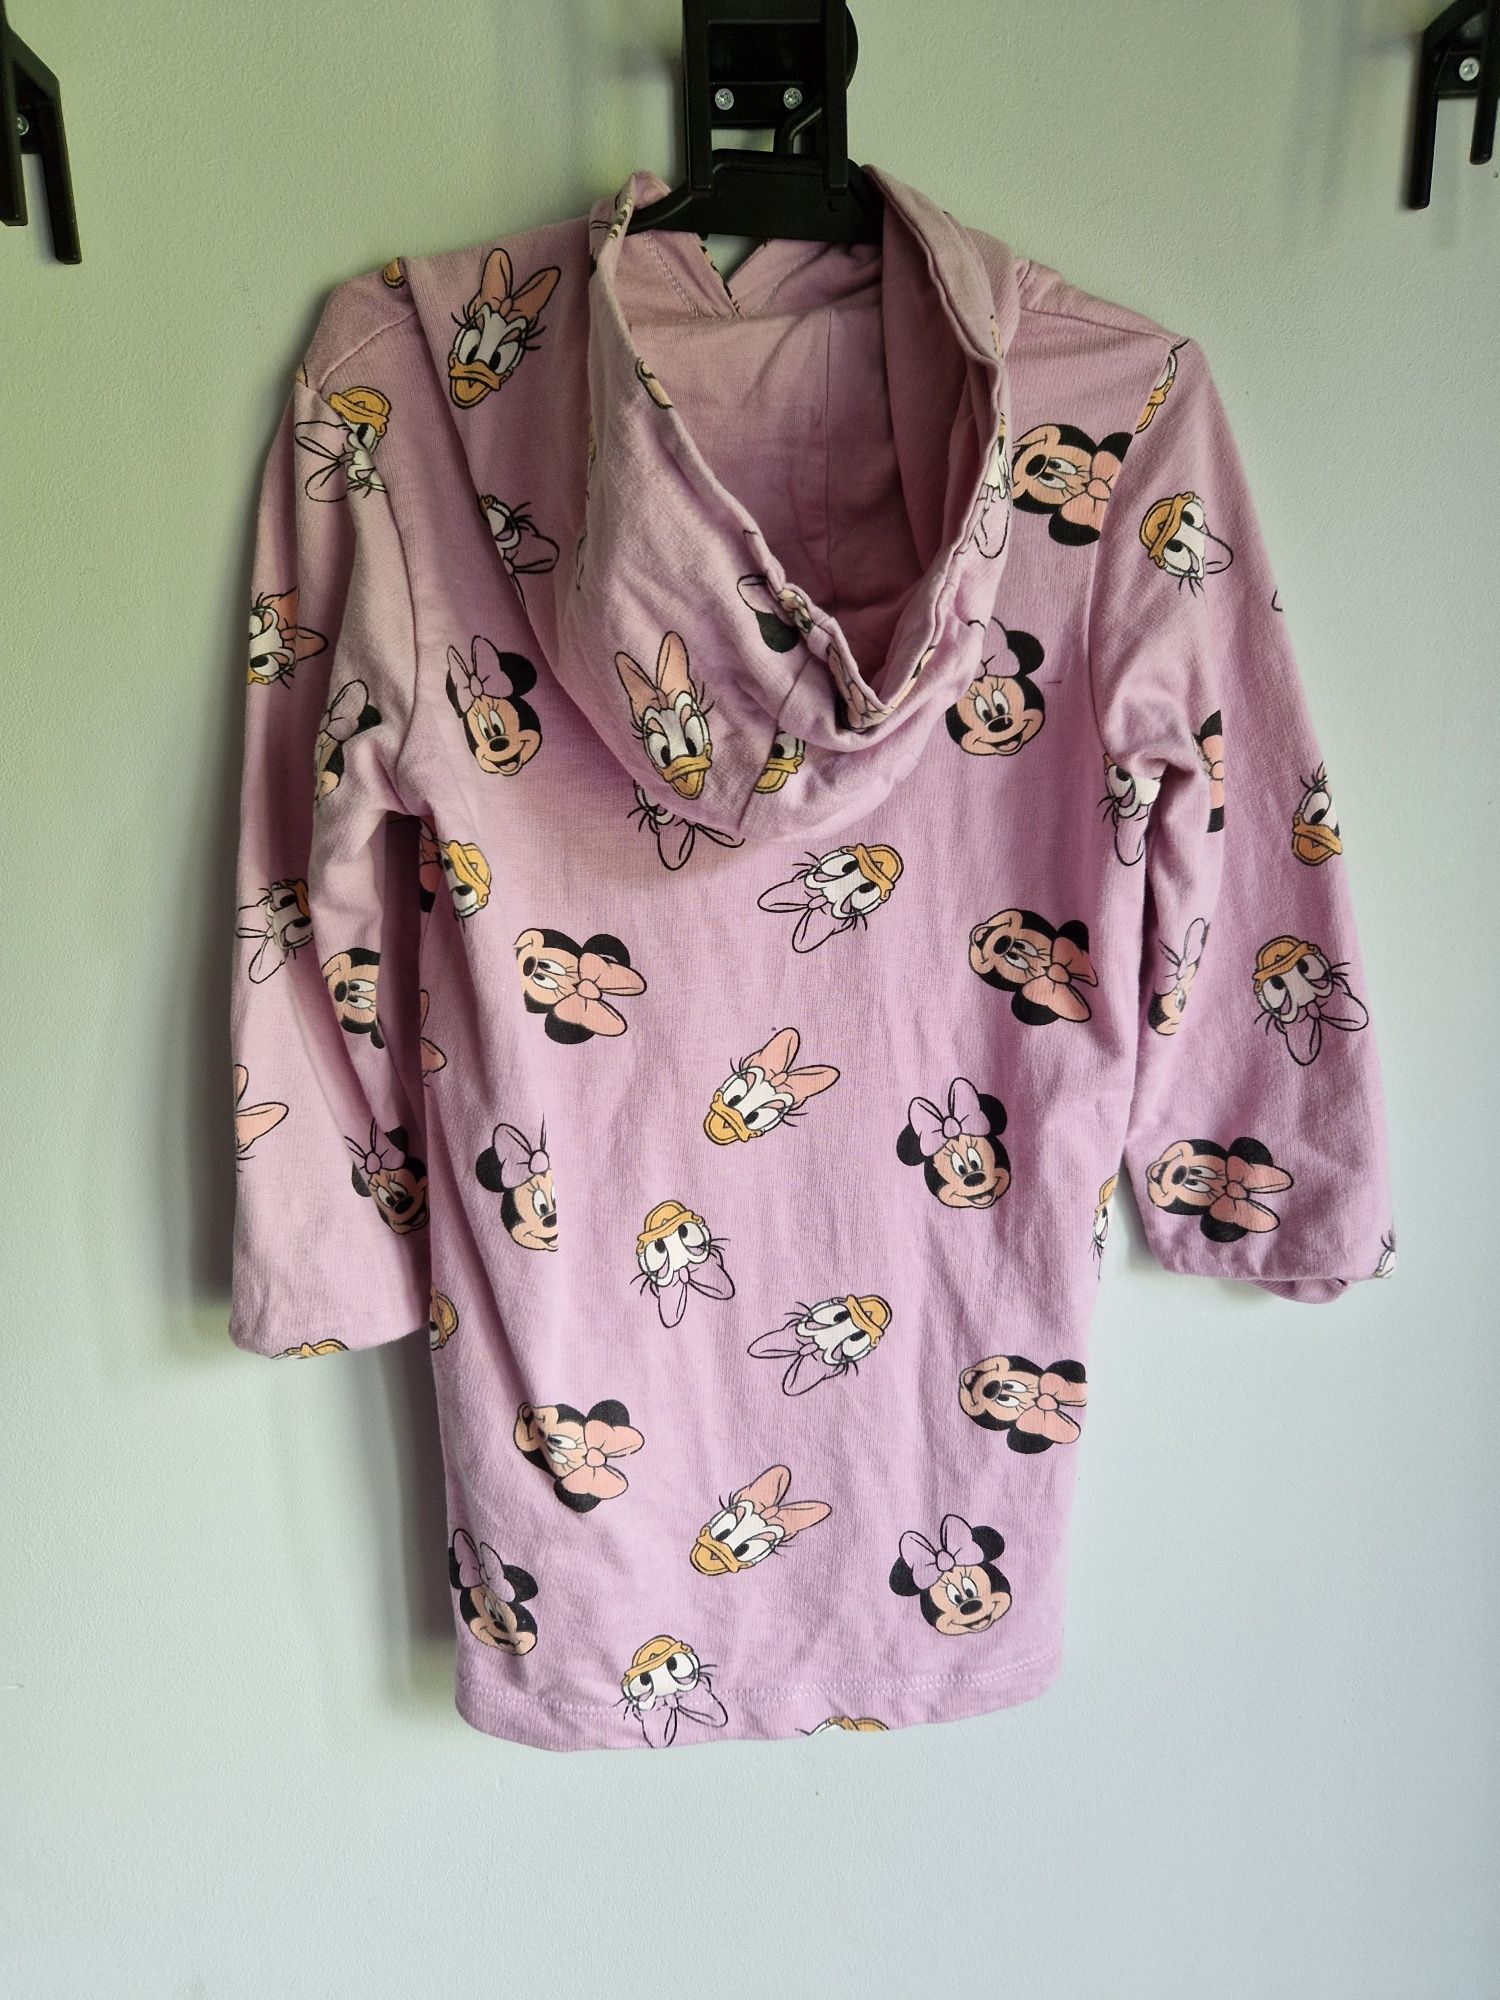 Bluzo sukienka fioletowa myszka minnie z kapturem